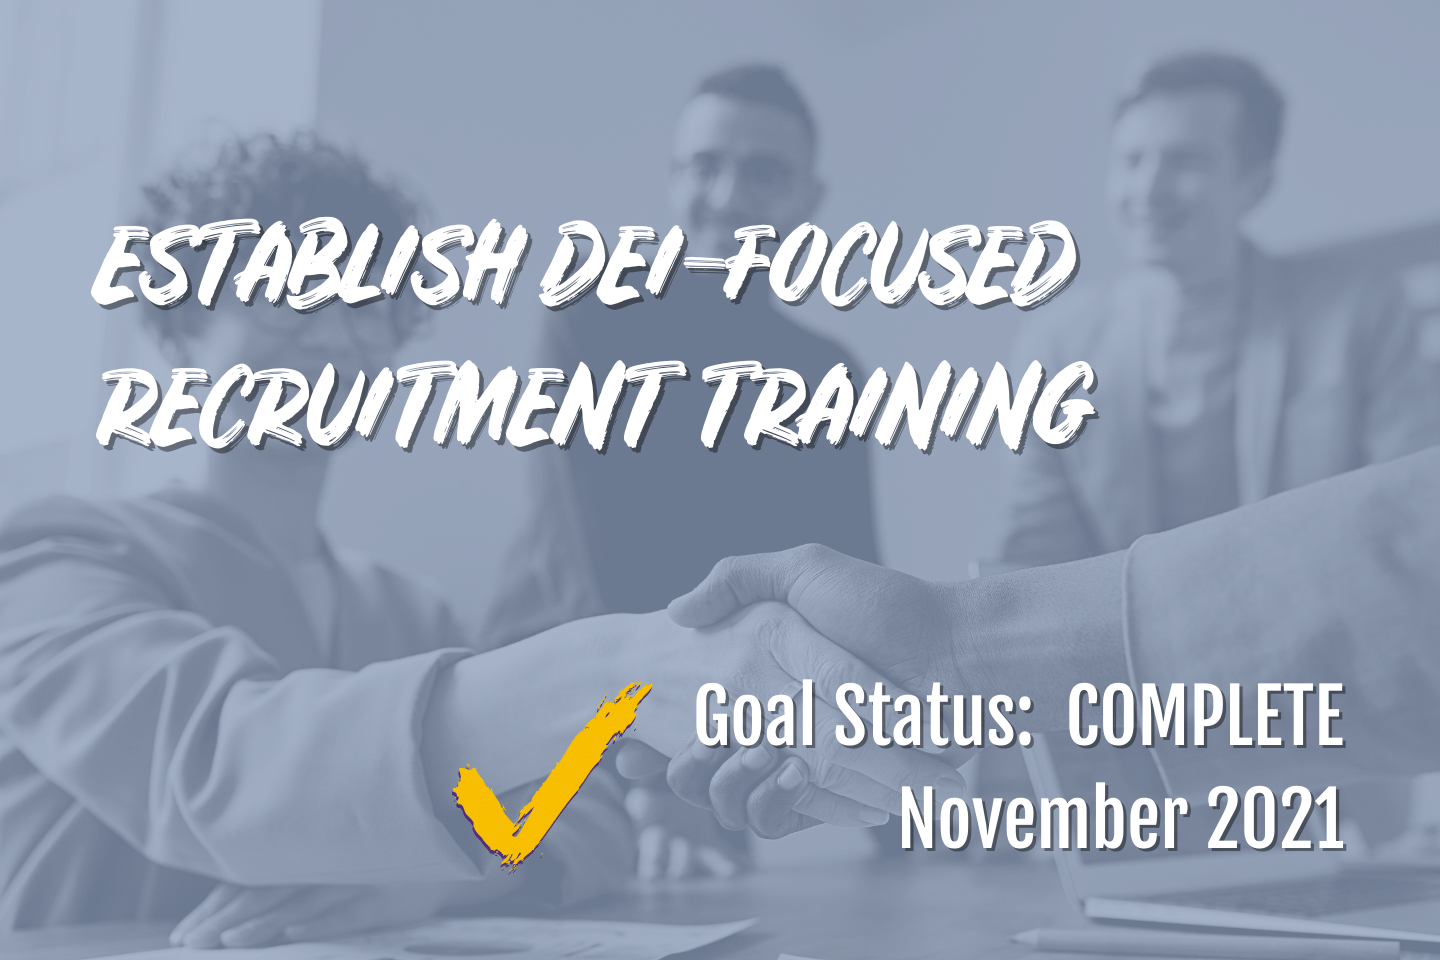 Establish DEI-focused recruitment training